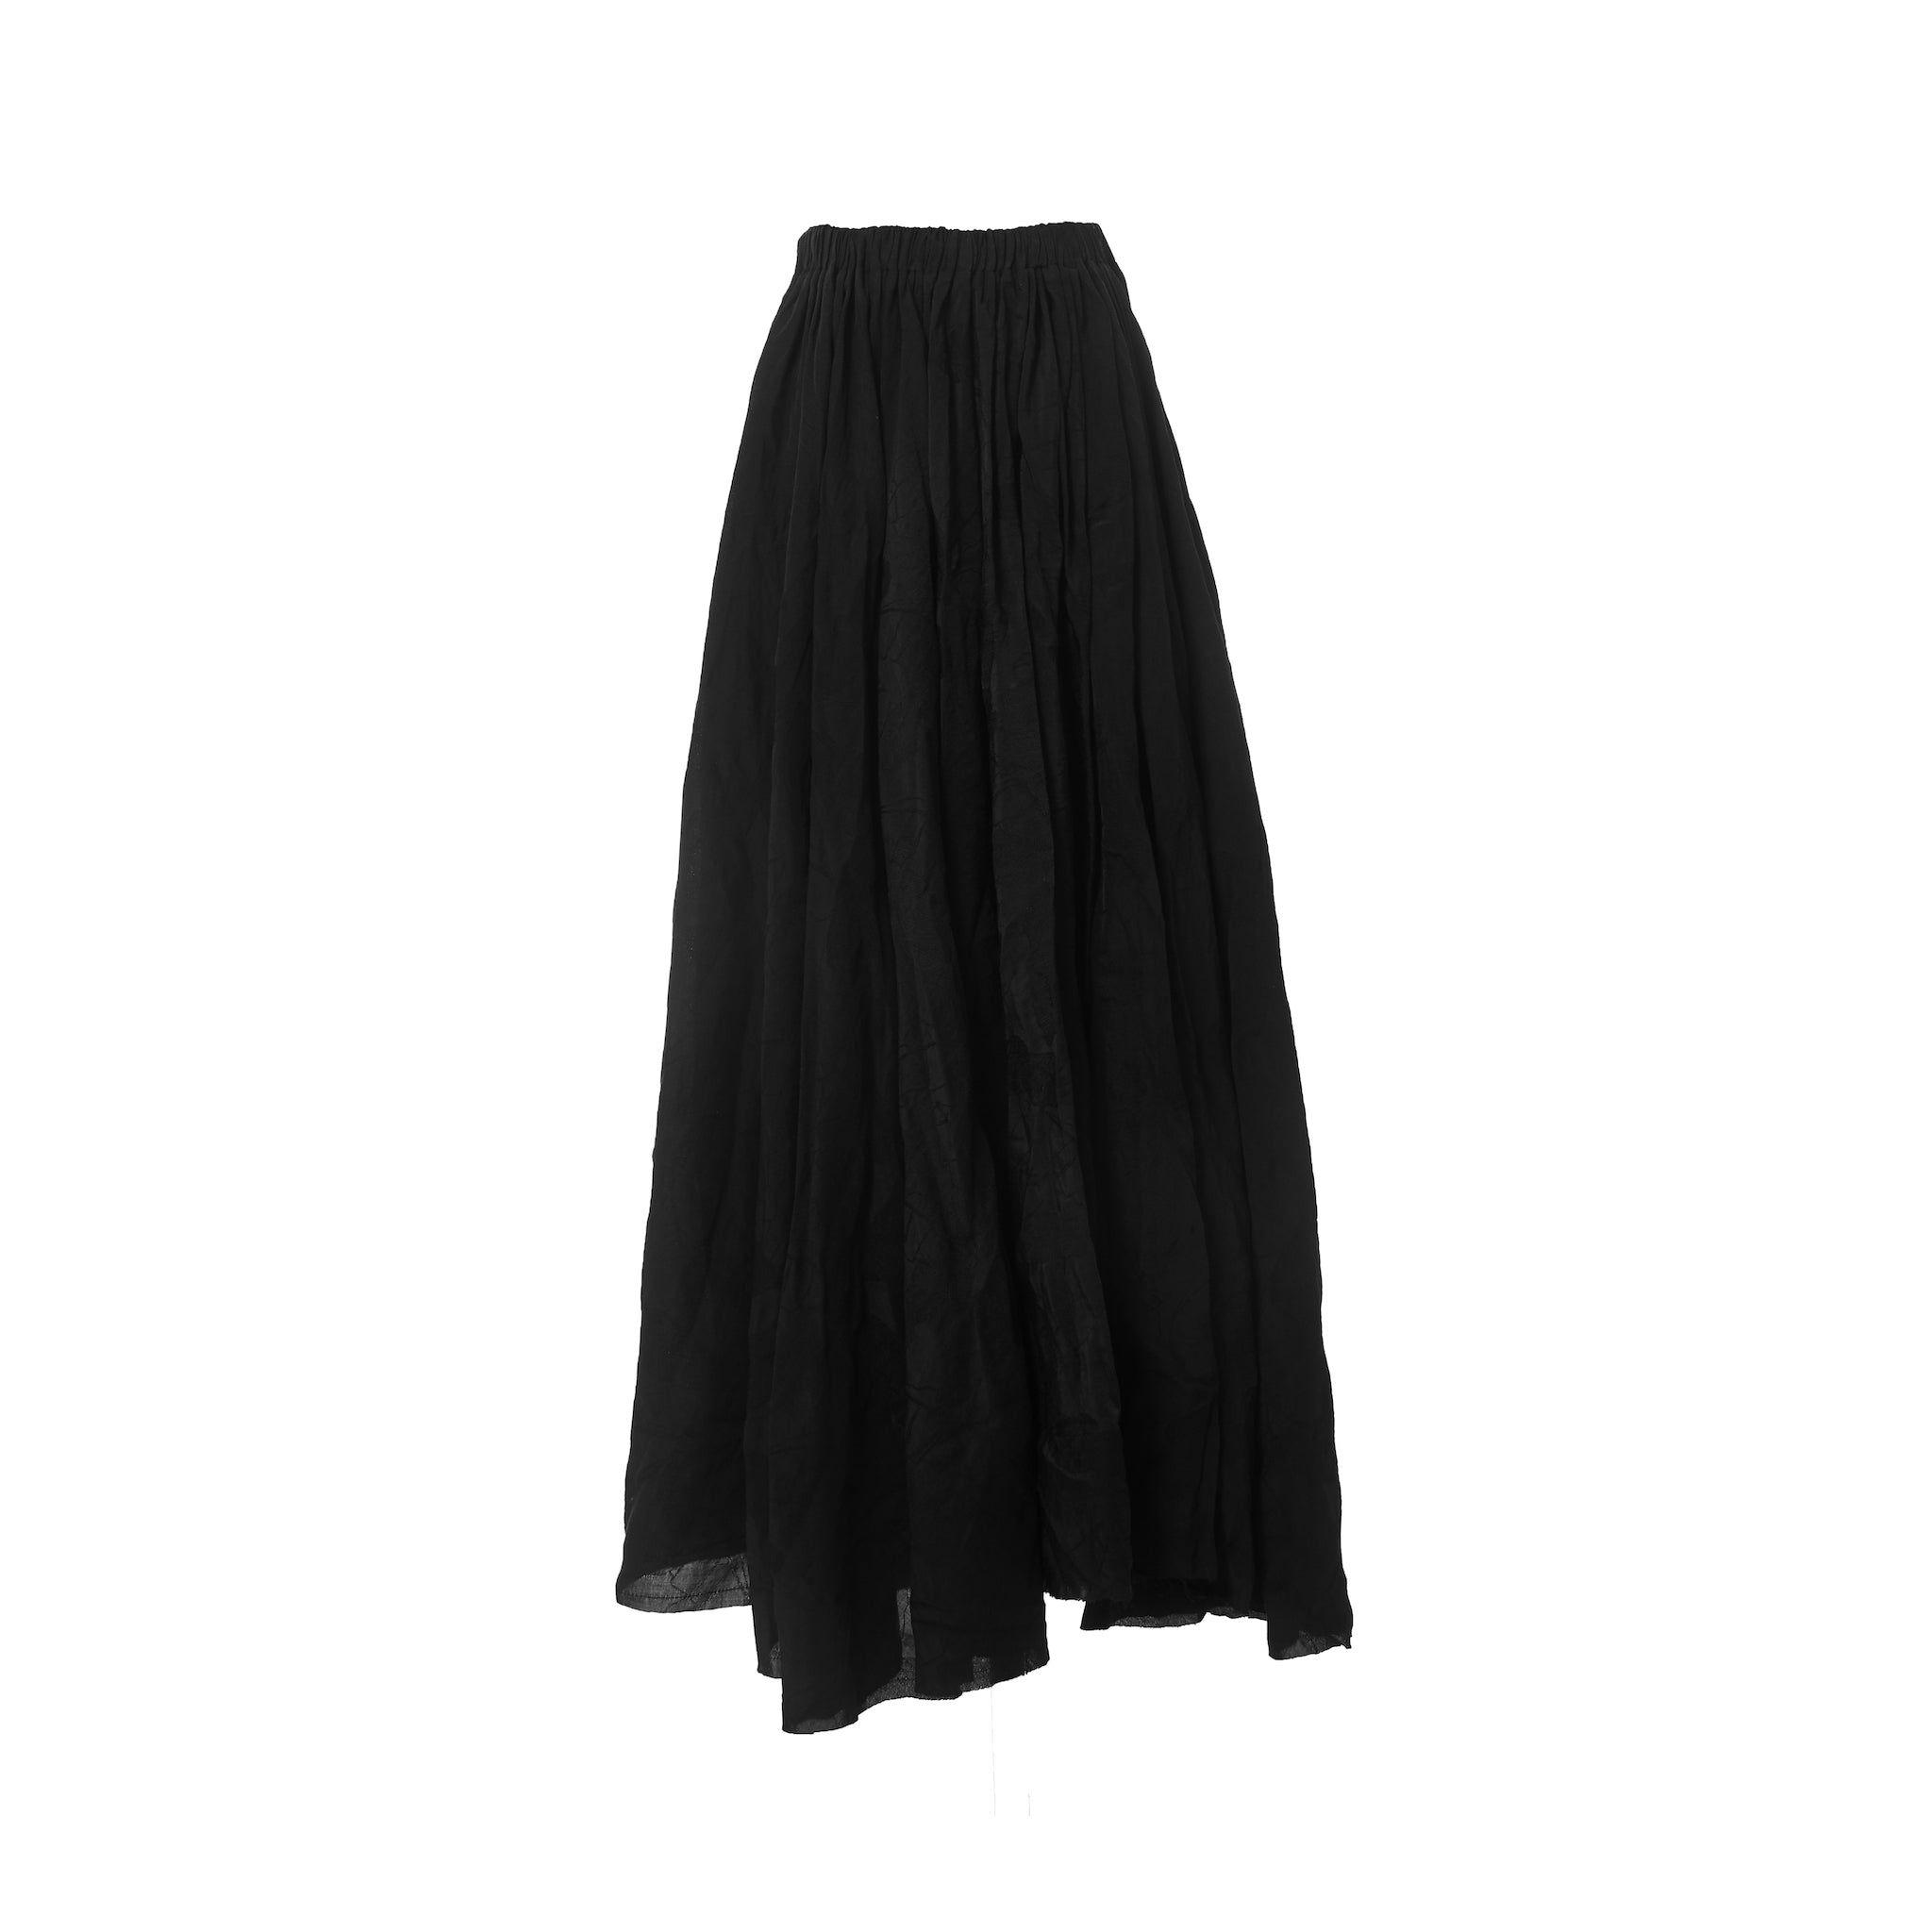 ELYWOOD Black Long Skirt & MADA IN CHINA